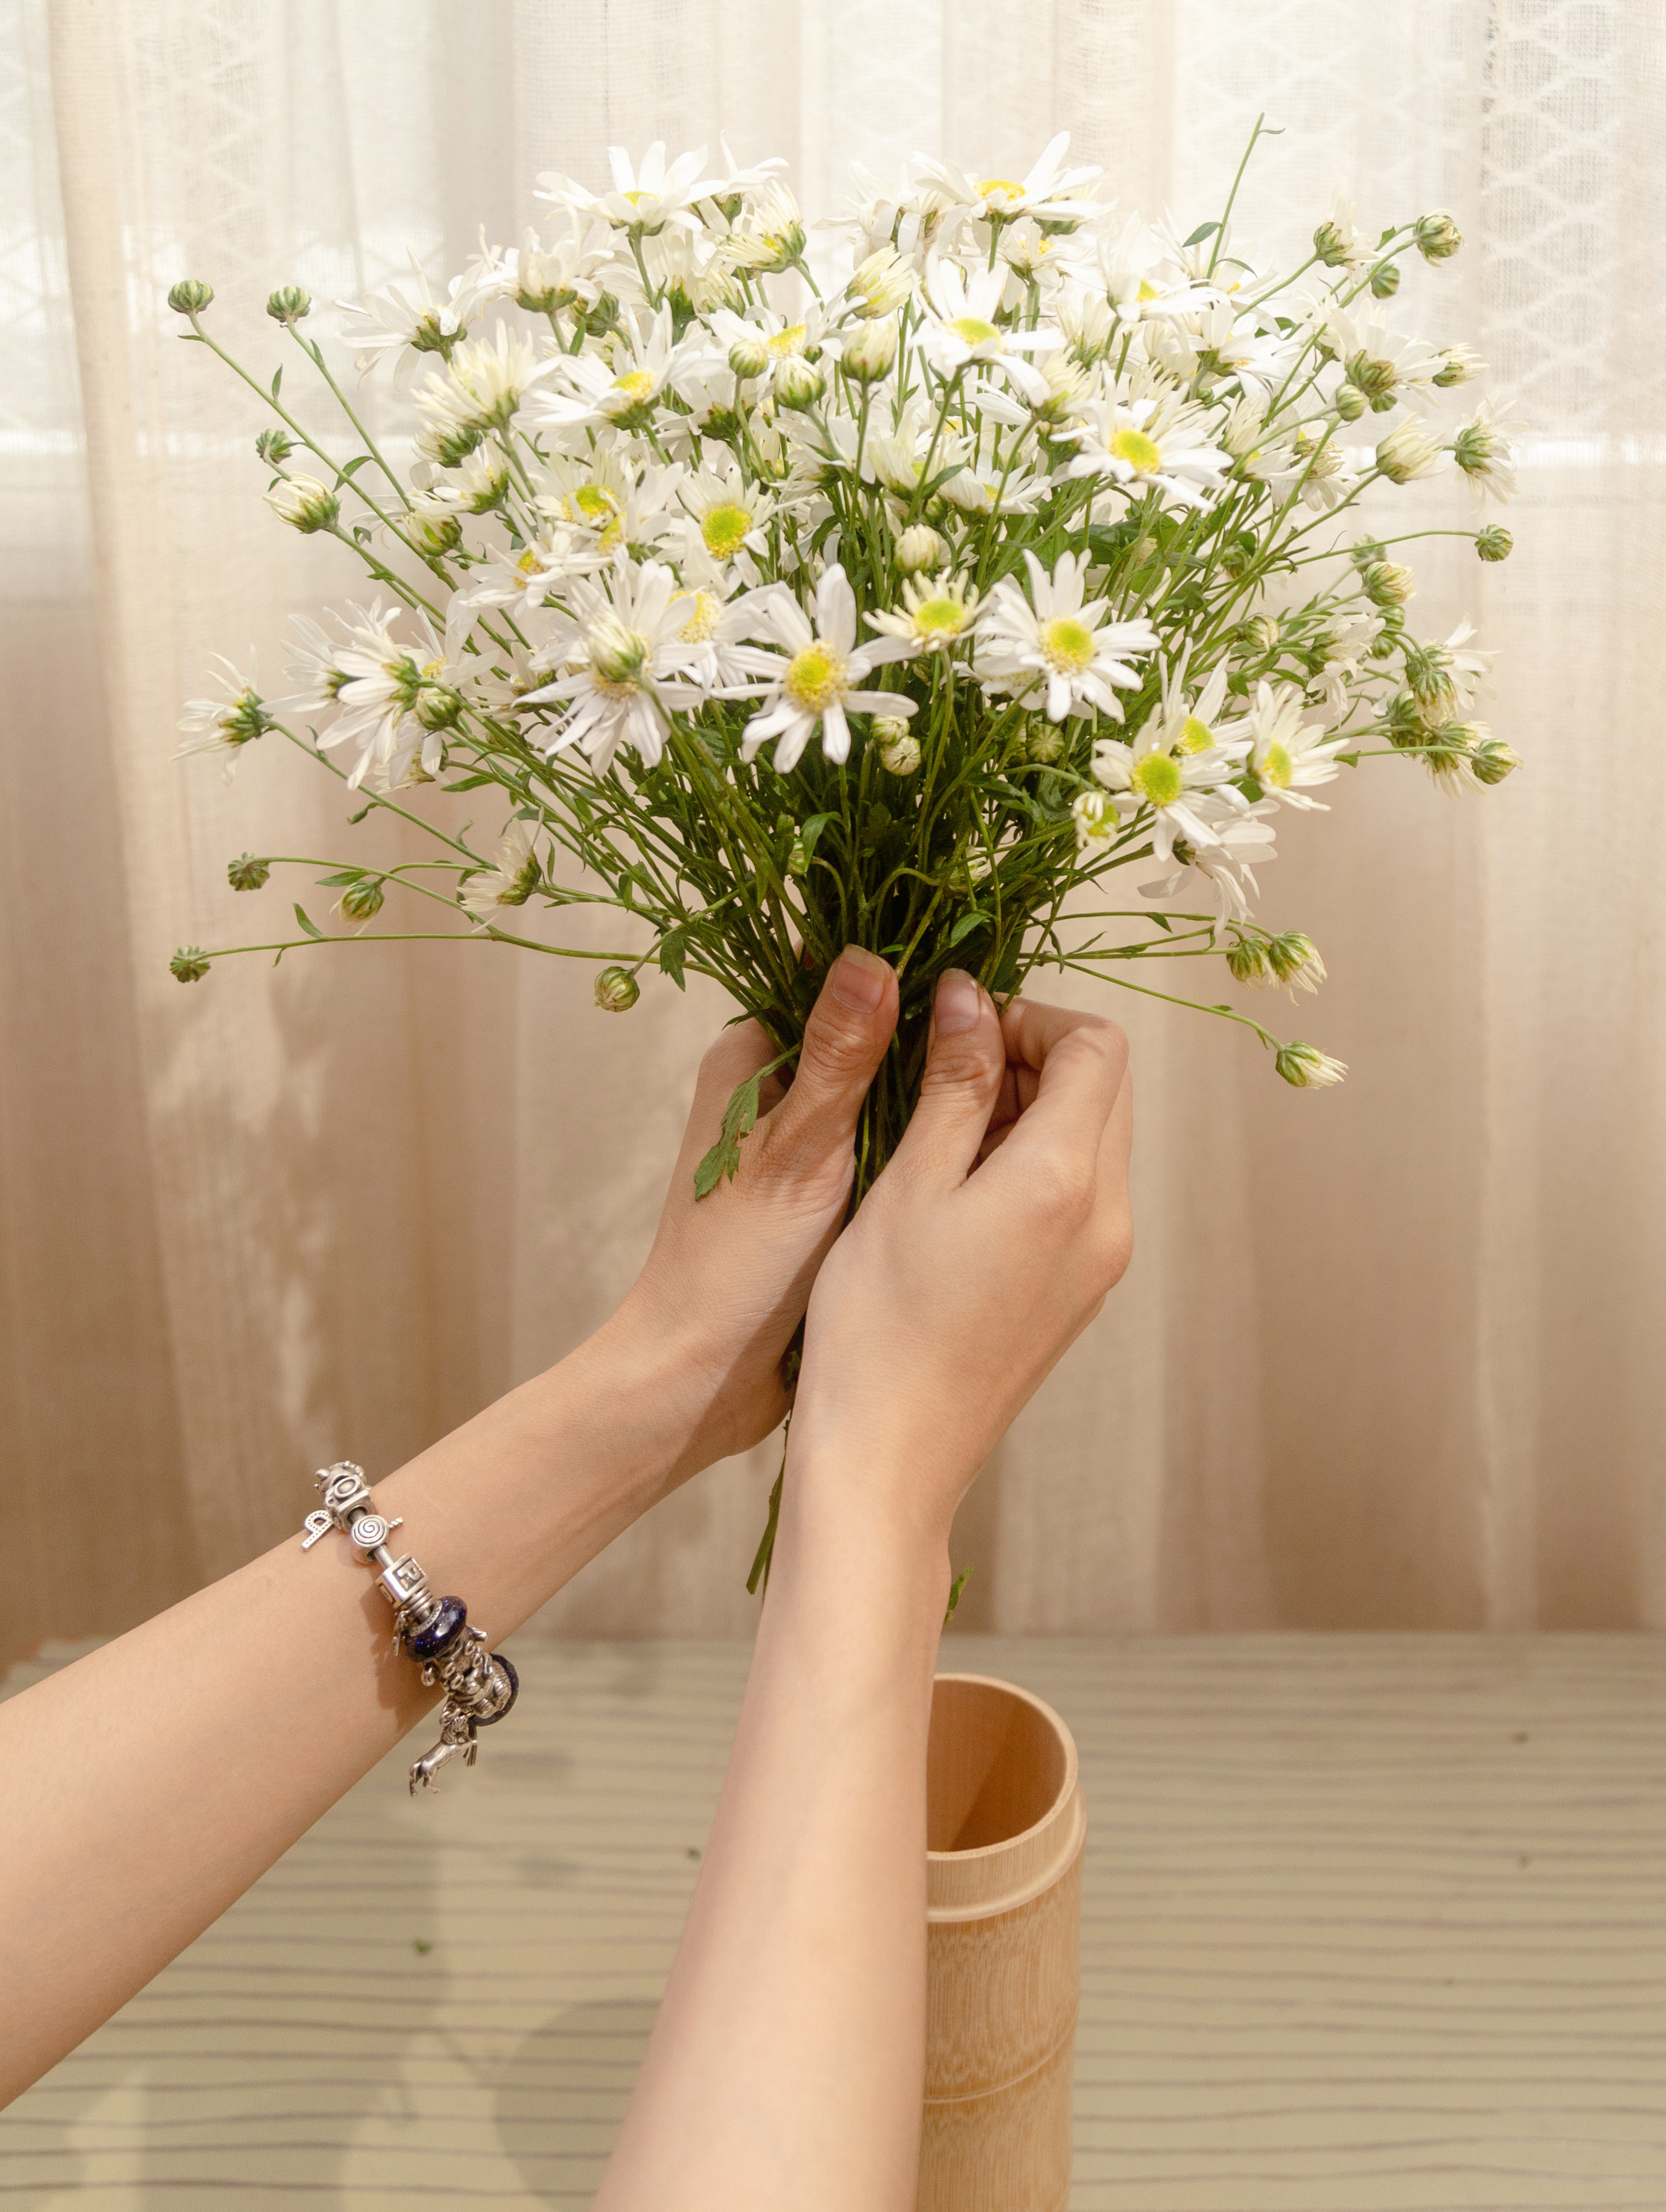 Cắm hoa cúc họa mi tại nhà: Bạn muốn tạo ra một không gian sống thật sinh động và tươi mới tại nhà của mình? Hãy thử cắm vài bông hoa cúc họa mi trang trí trong nhà. Với vẻ đẹp tươi sáng và thơm ngát, hoa cúc họa mi chắc chắn sẽ làm cho không gian sống của bạn trở nên tràn đầy sức sống và tươi mới mỗi ngày.